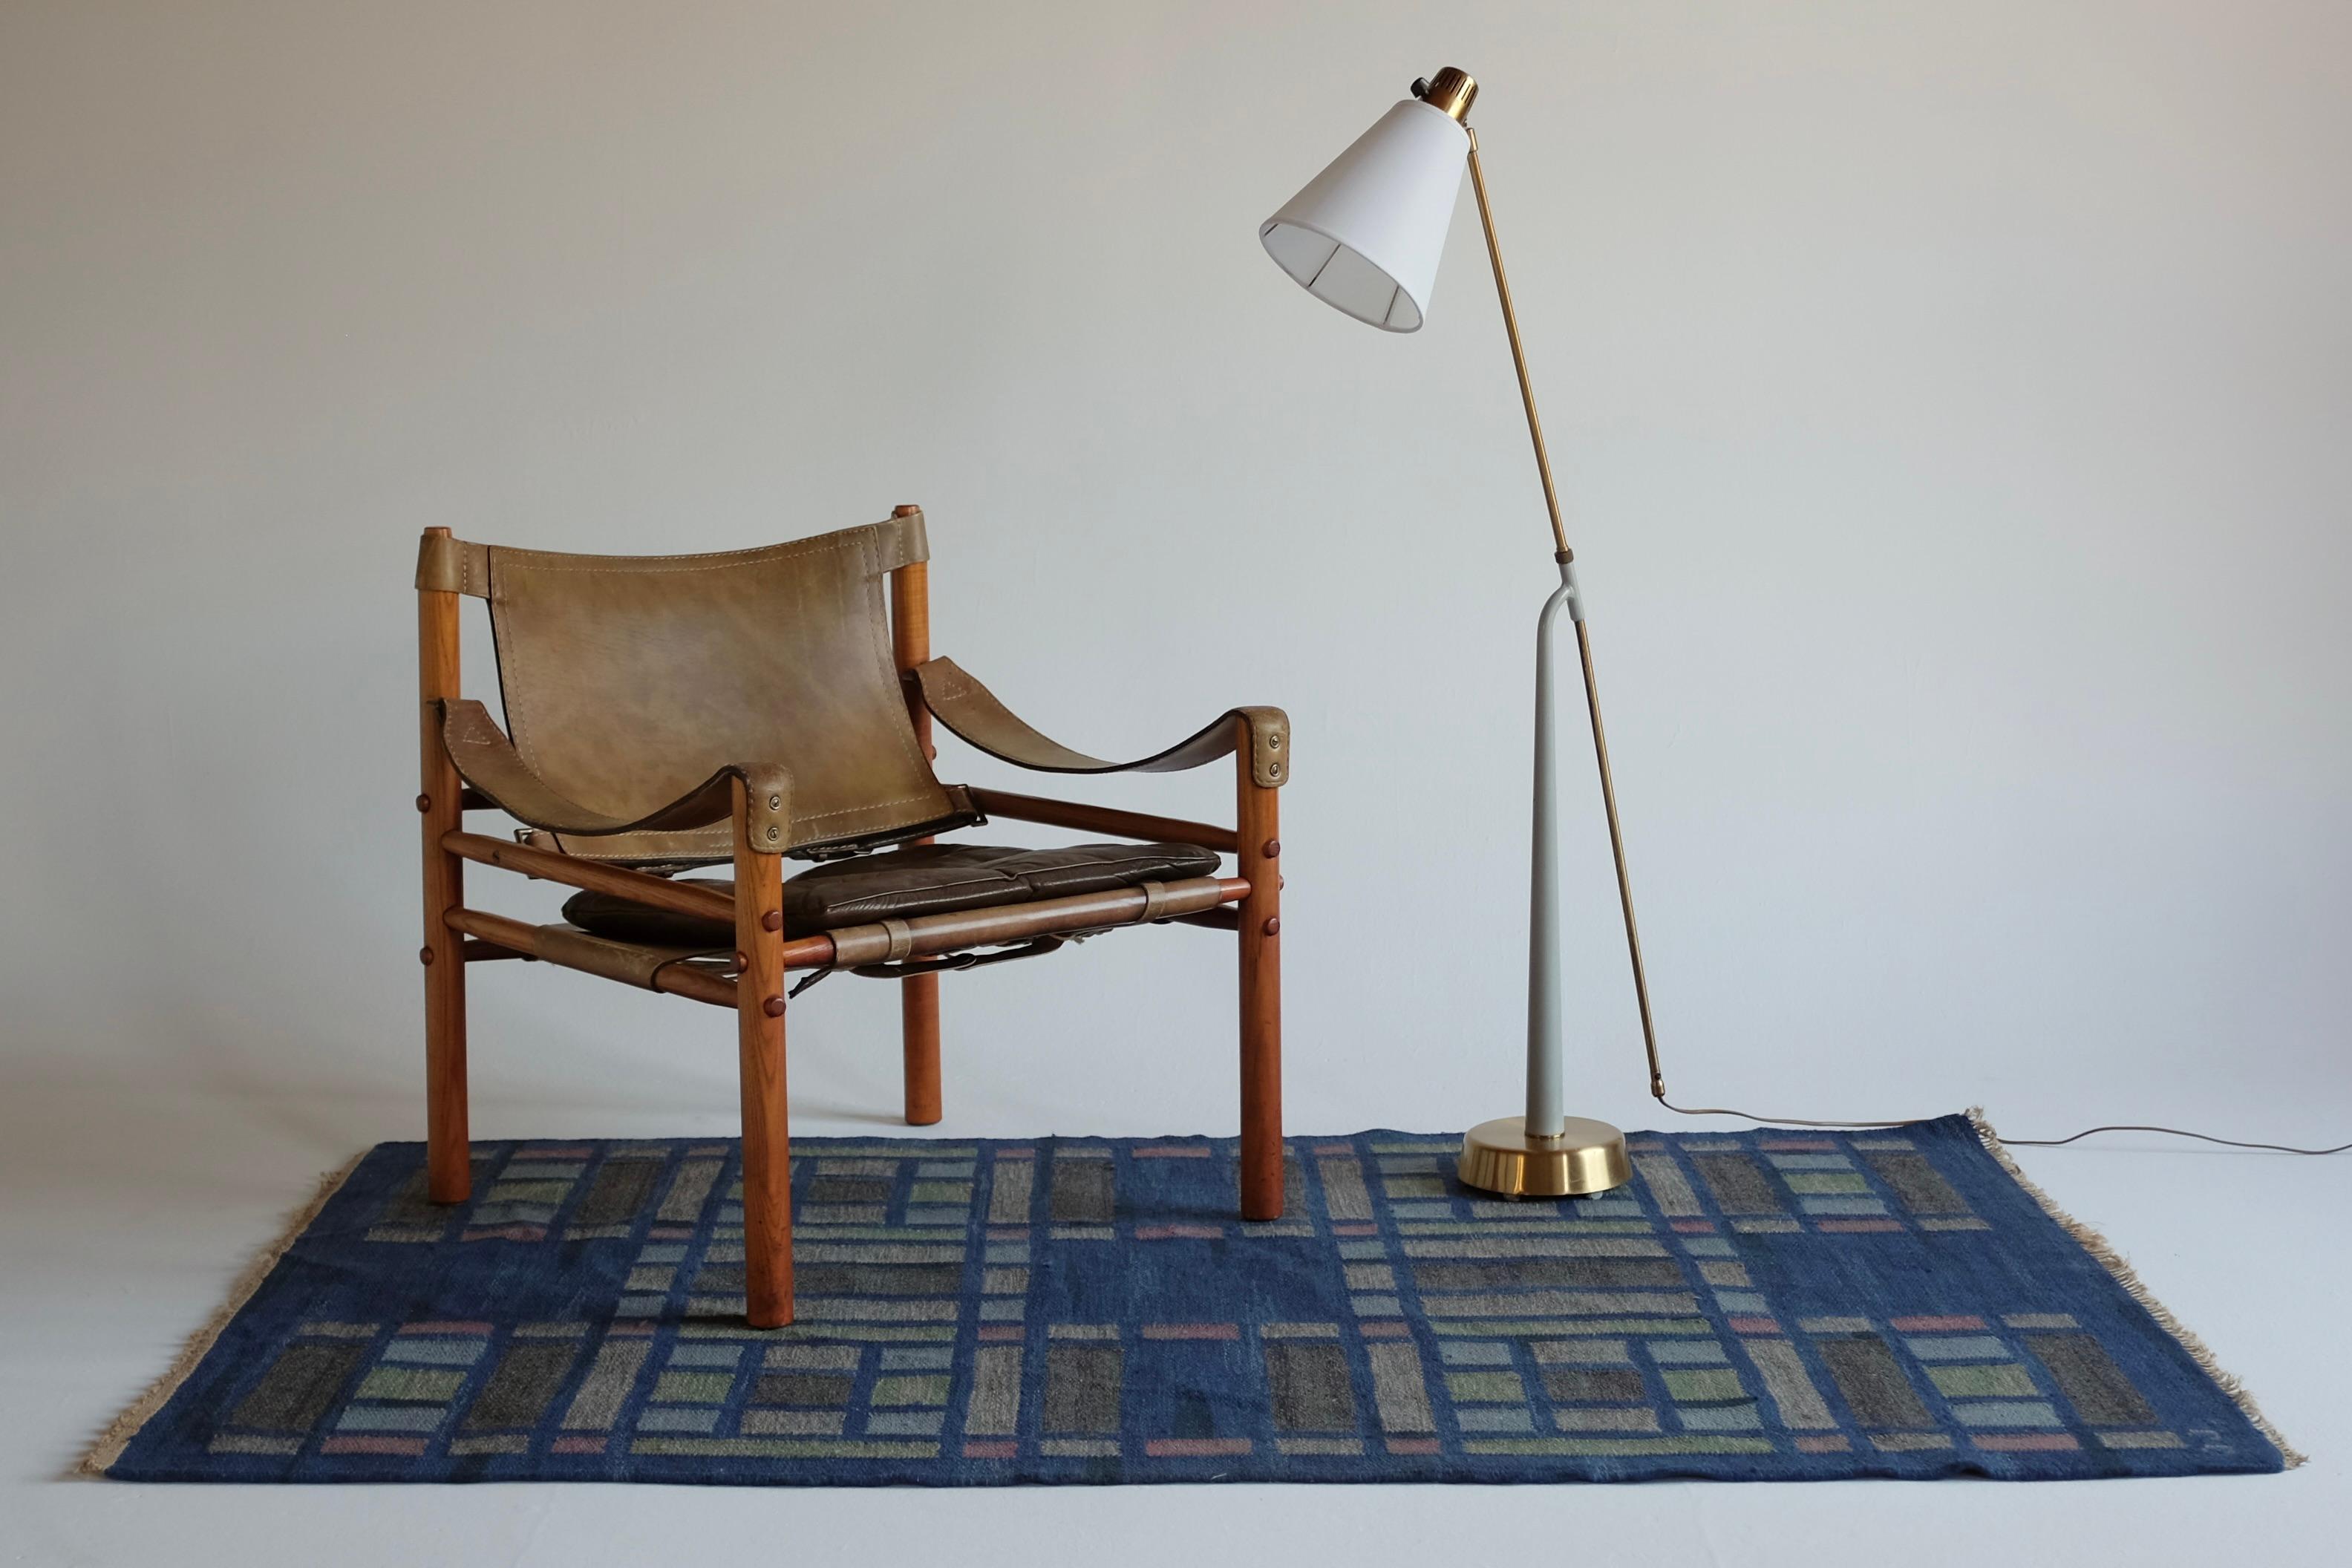 Schwedischer Mid-Century-Teppich namens Kärrmark von Judith Johansson. Es wurde 1955 entworfen und zeigt einen blauen Hintergrund mit einem Kaleidoskop-Muster in Grün-, Rosa- und Lila-Tönen. Judith Johansson war eine schwedische Textildesignerin,